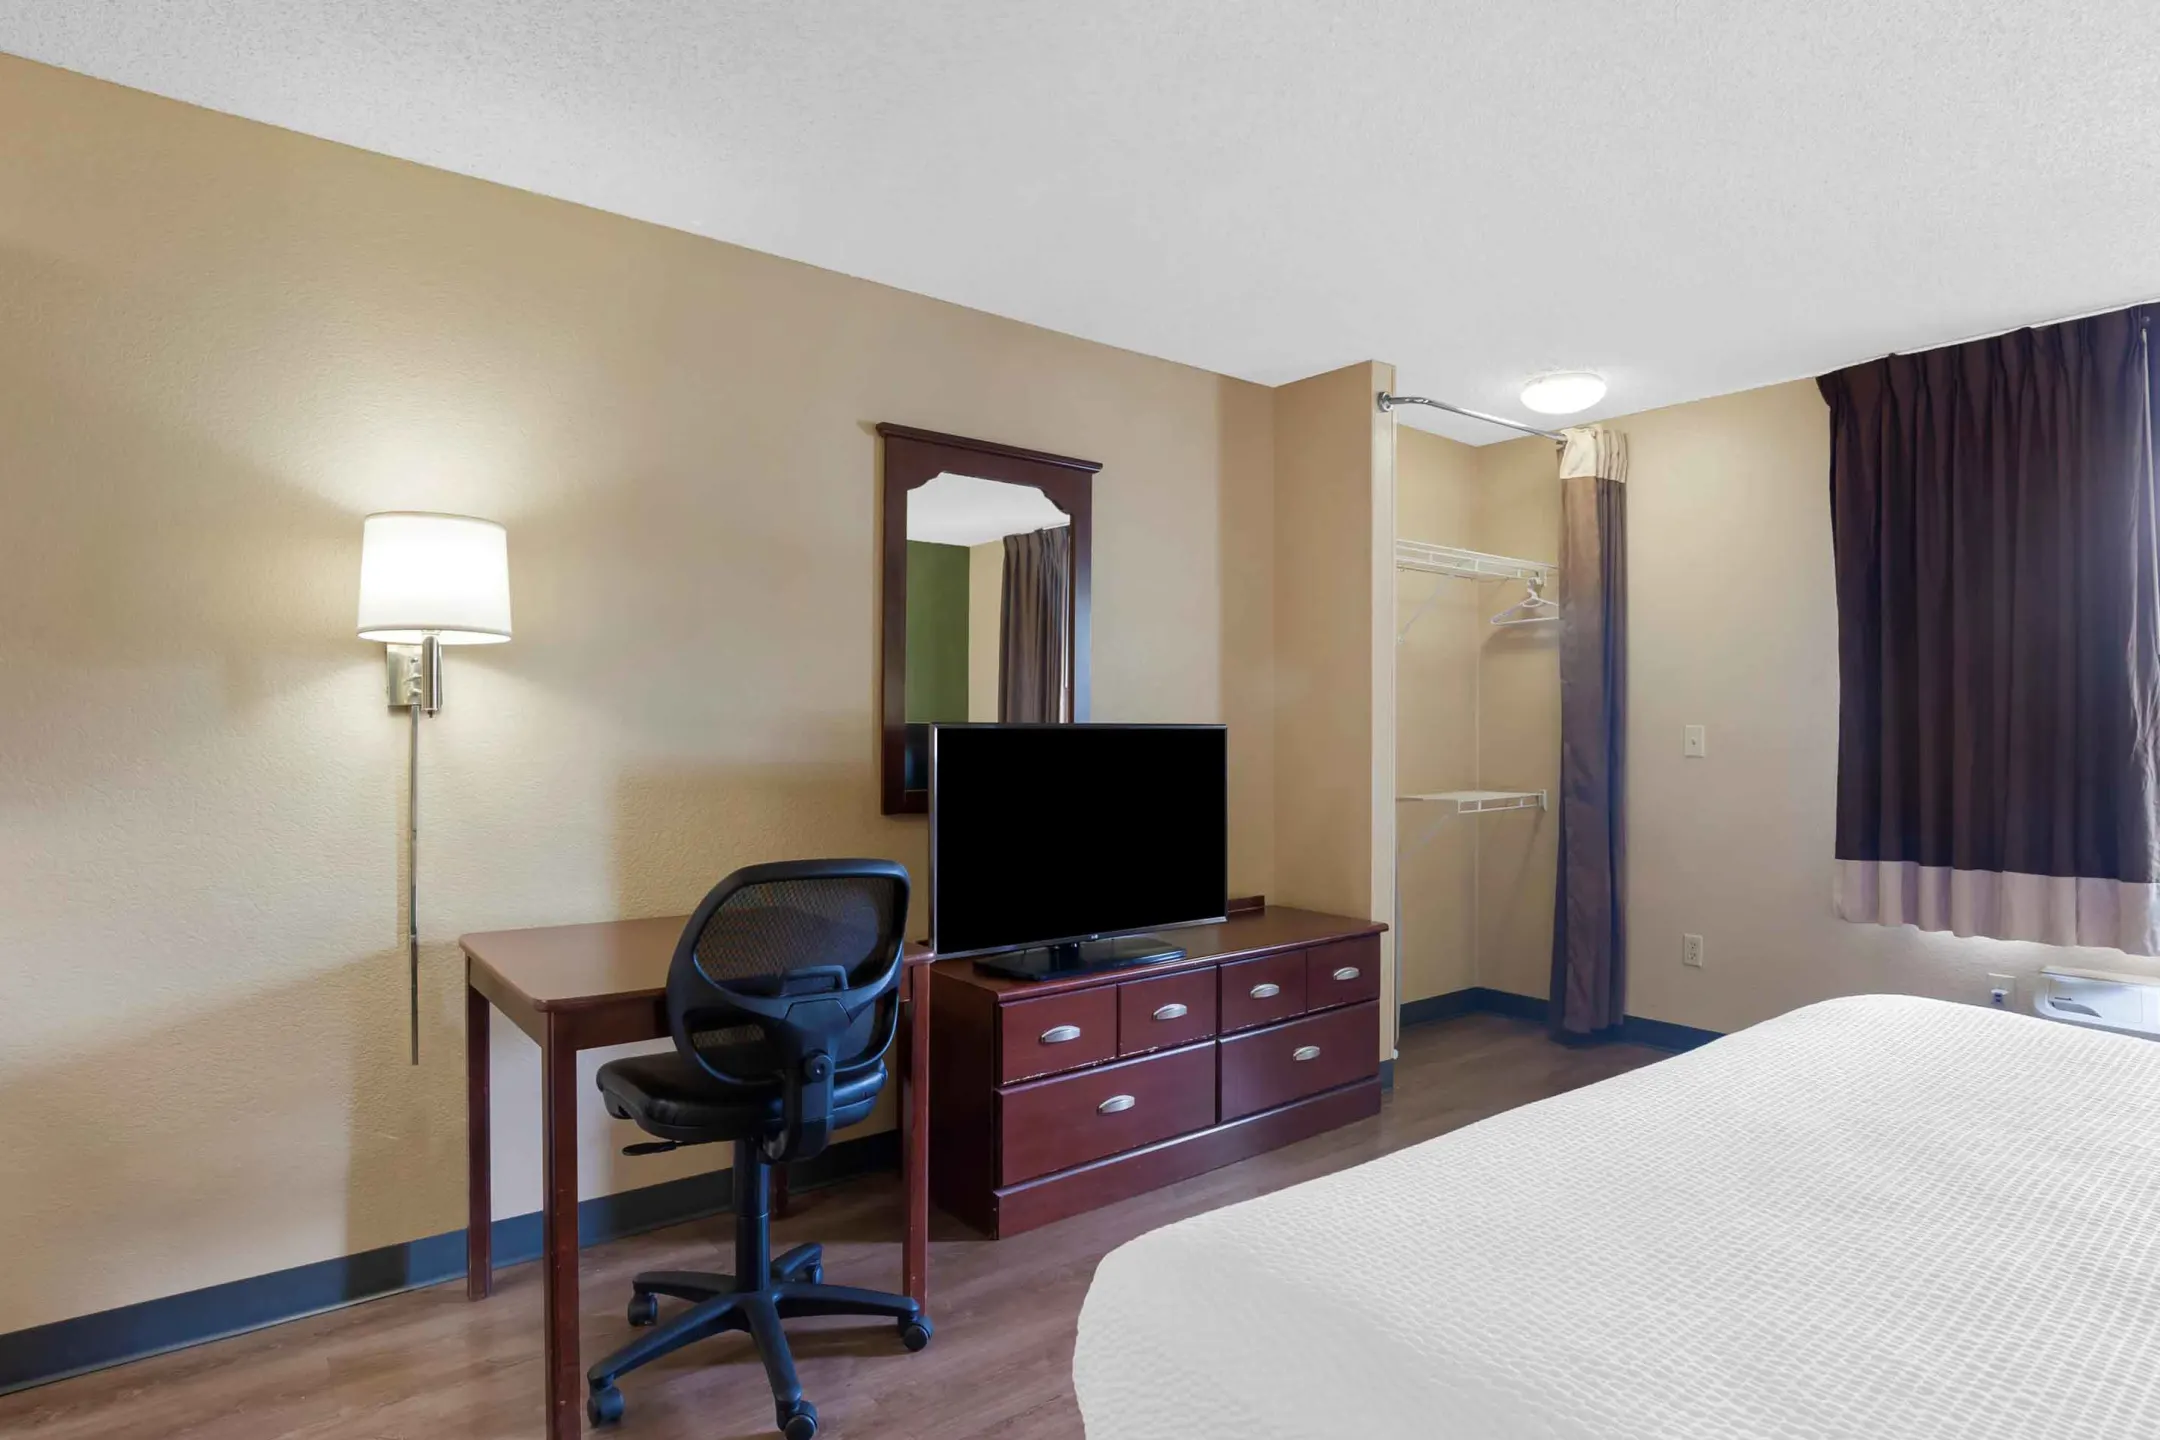 Bedroom - Furnished Studio - Fort Worth - Medical Center - Fort Worth, TX